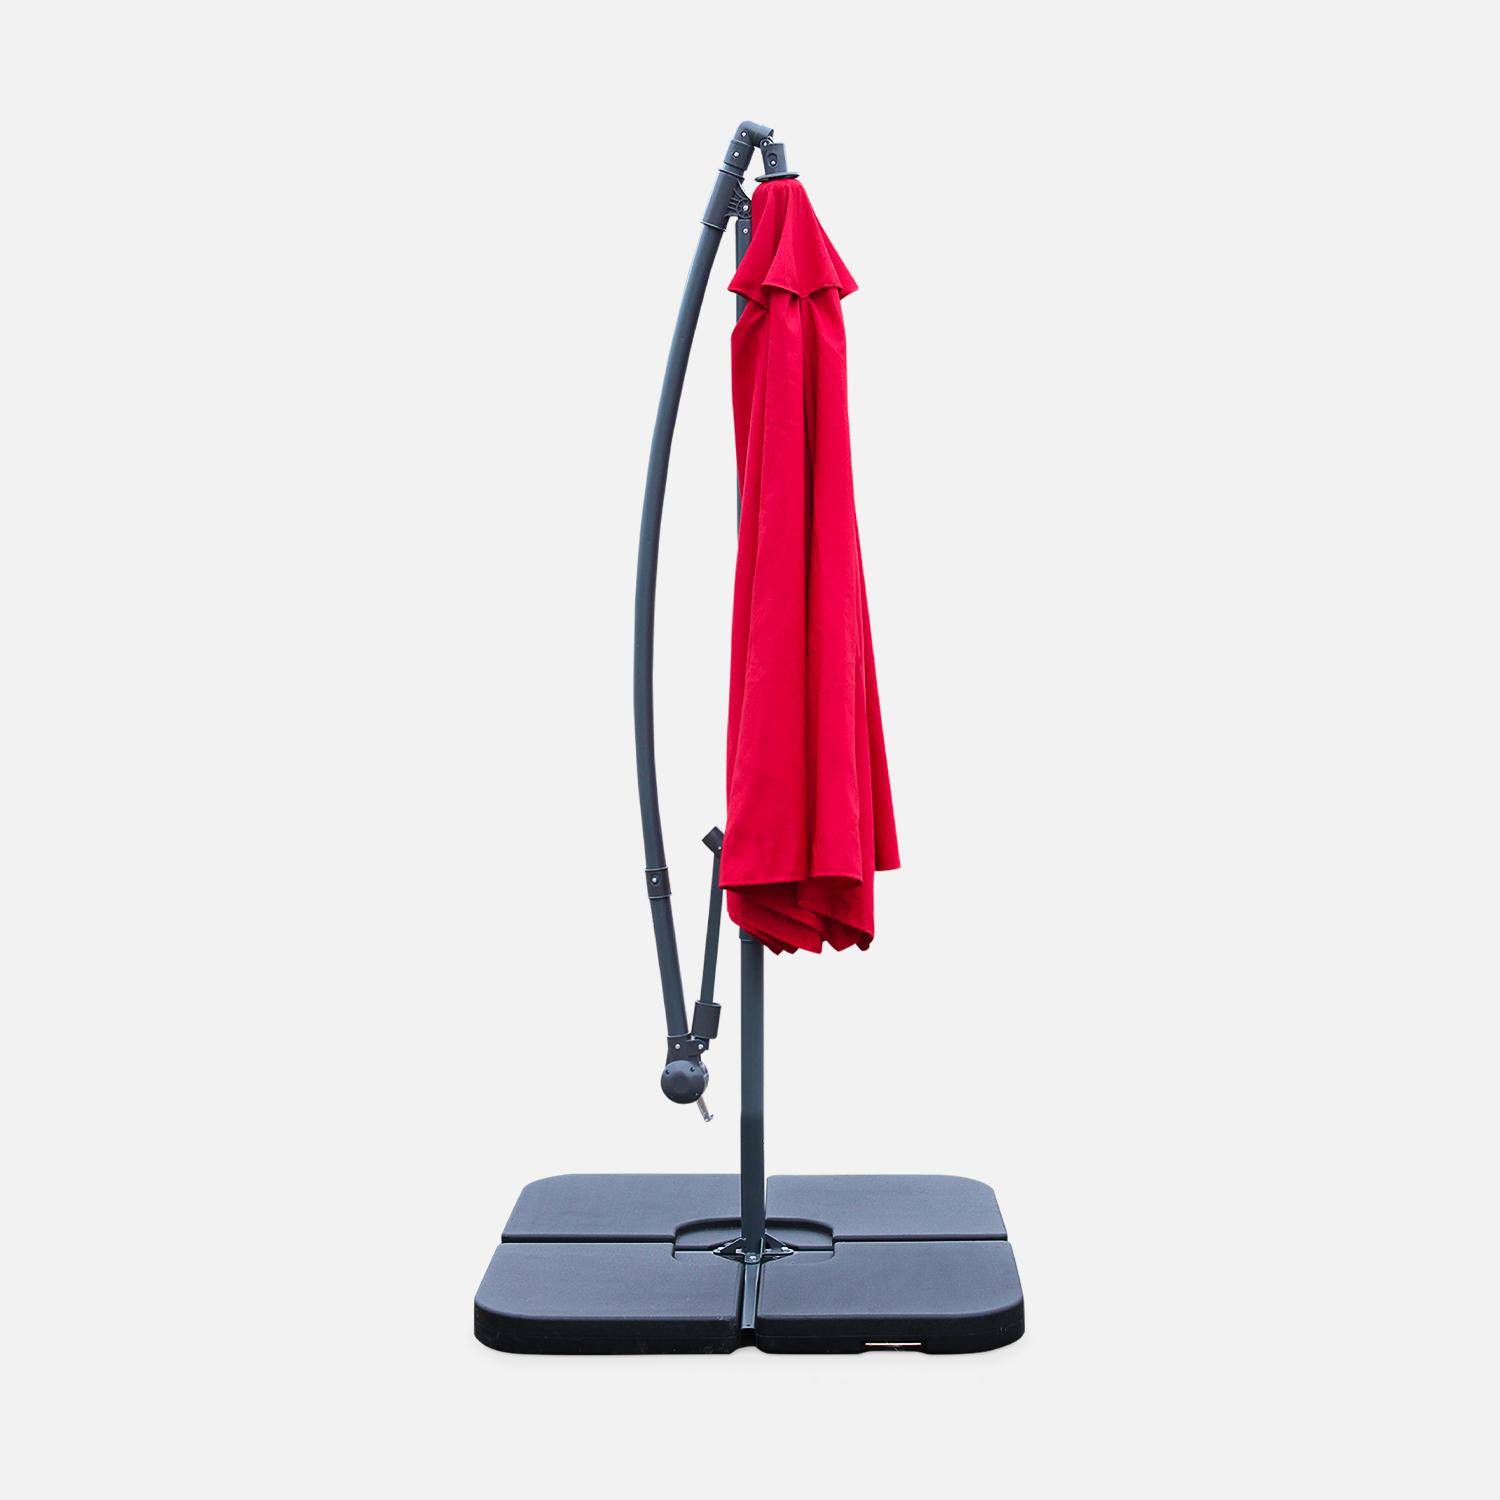 Guarda-chuva redondo deportado 3x3m - Hardelot - Vermelho - Manivela anti-retorno | Tecido repelente à água | Fácil de usar Photo3